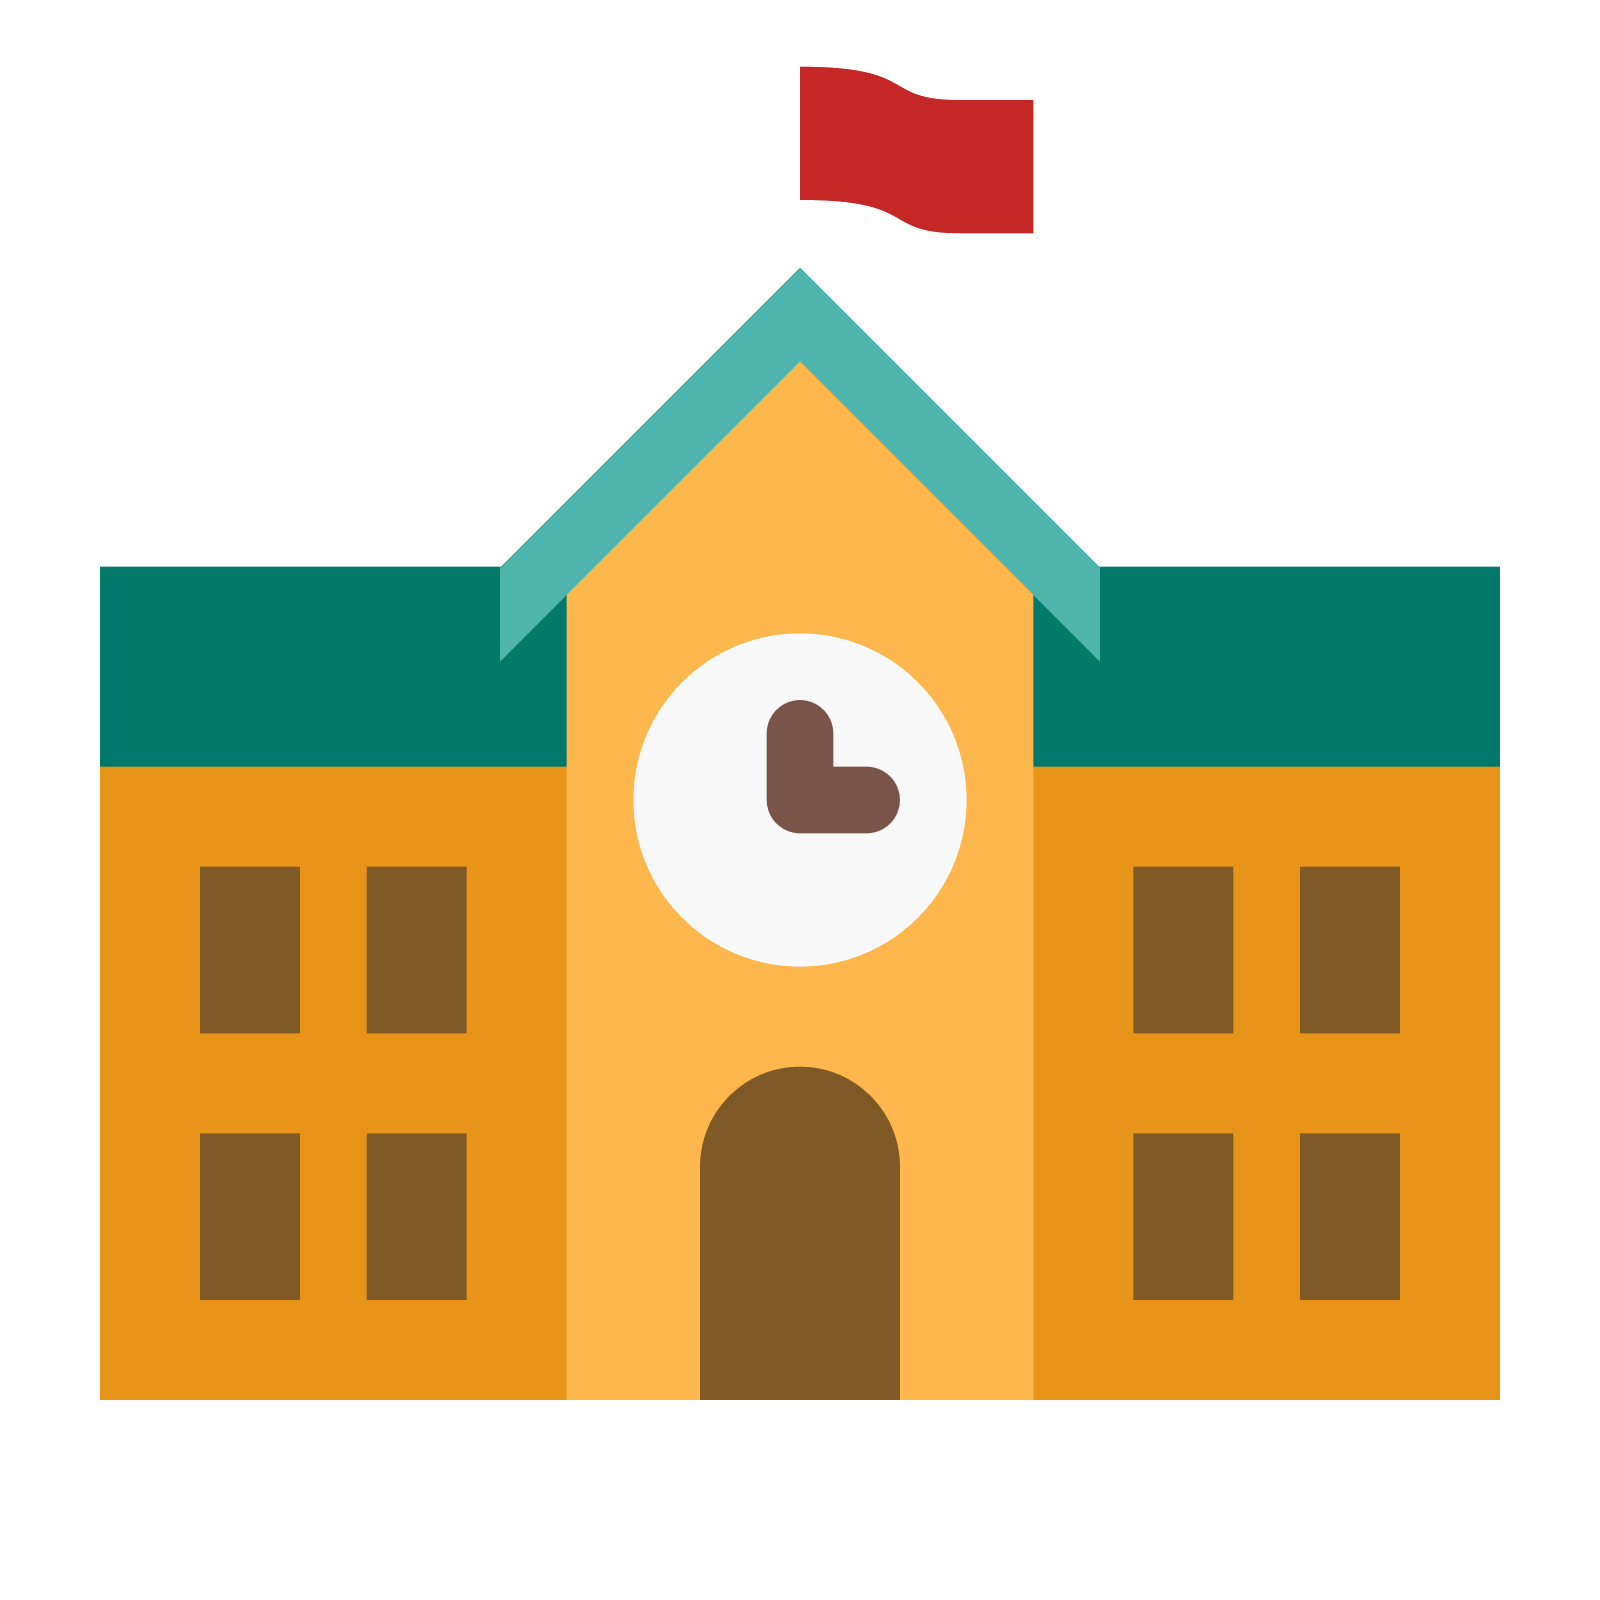 School icon. A school symbol 